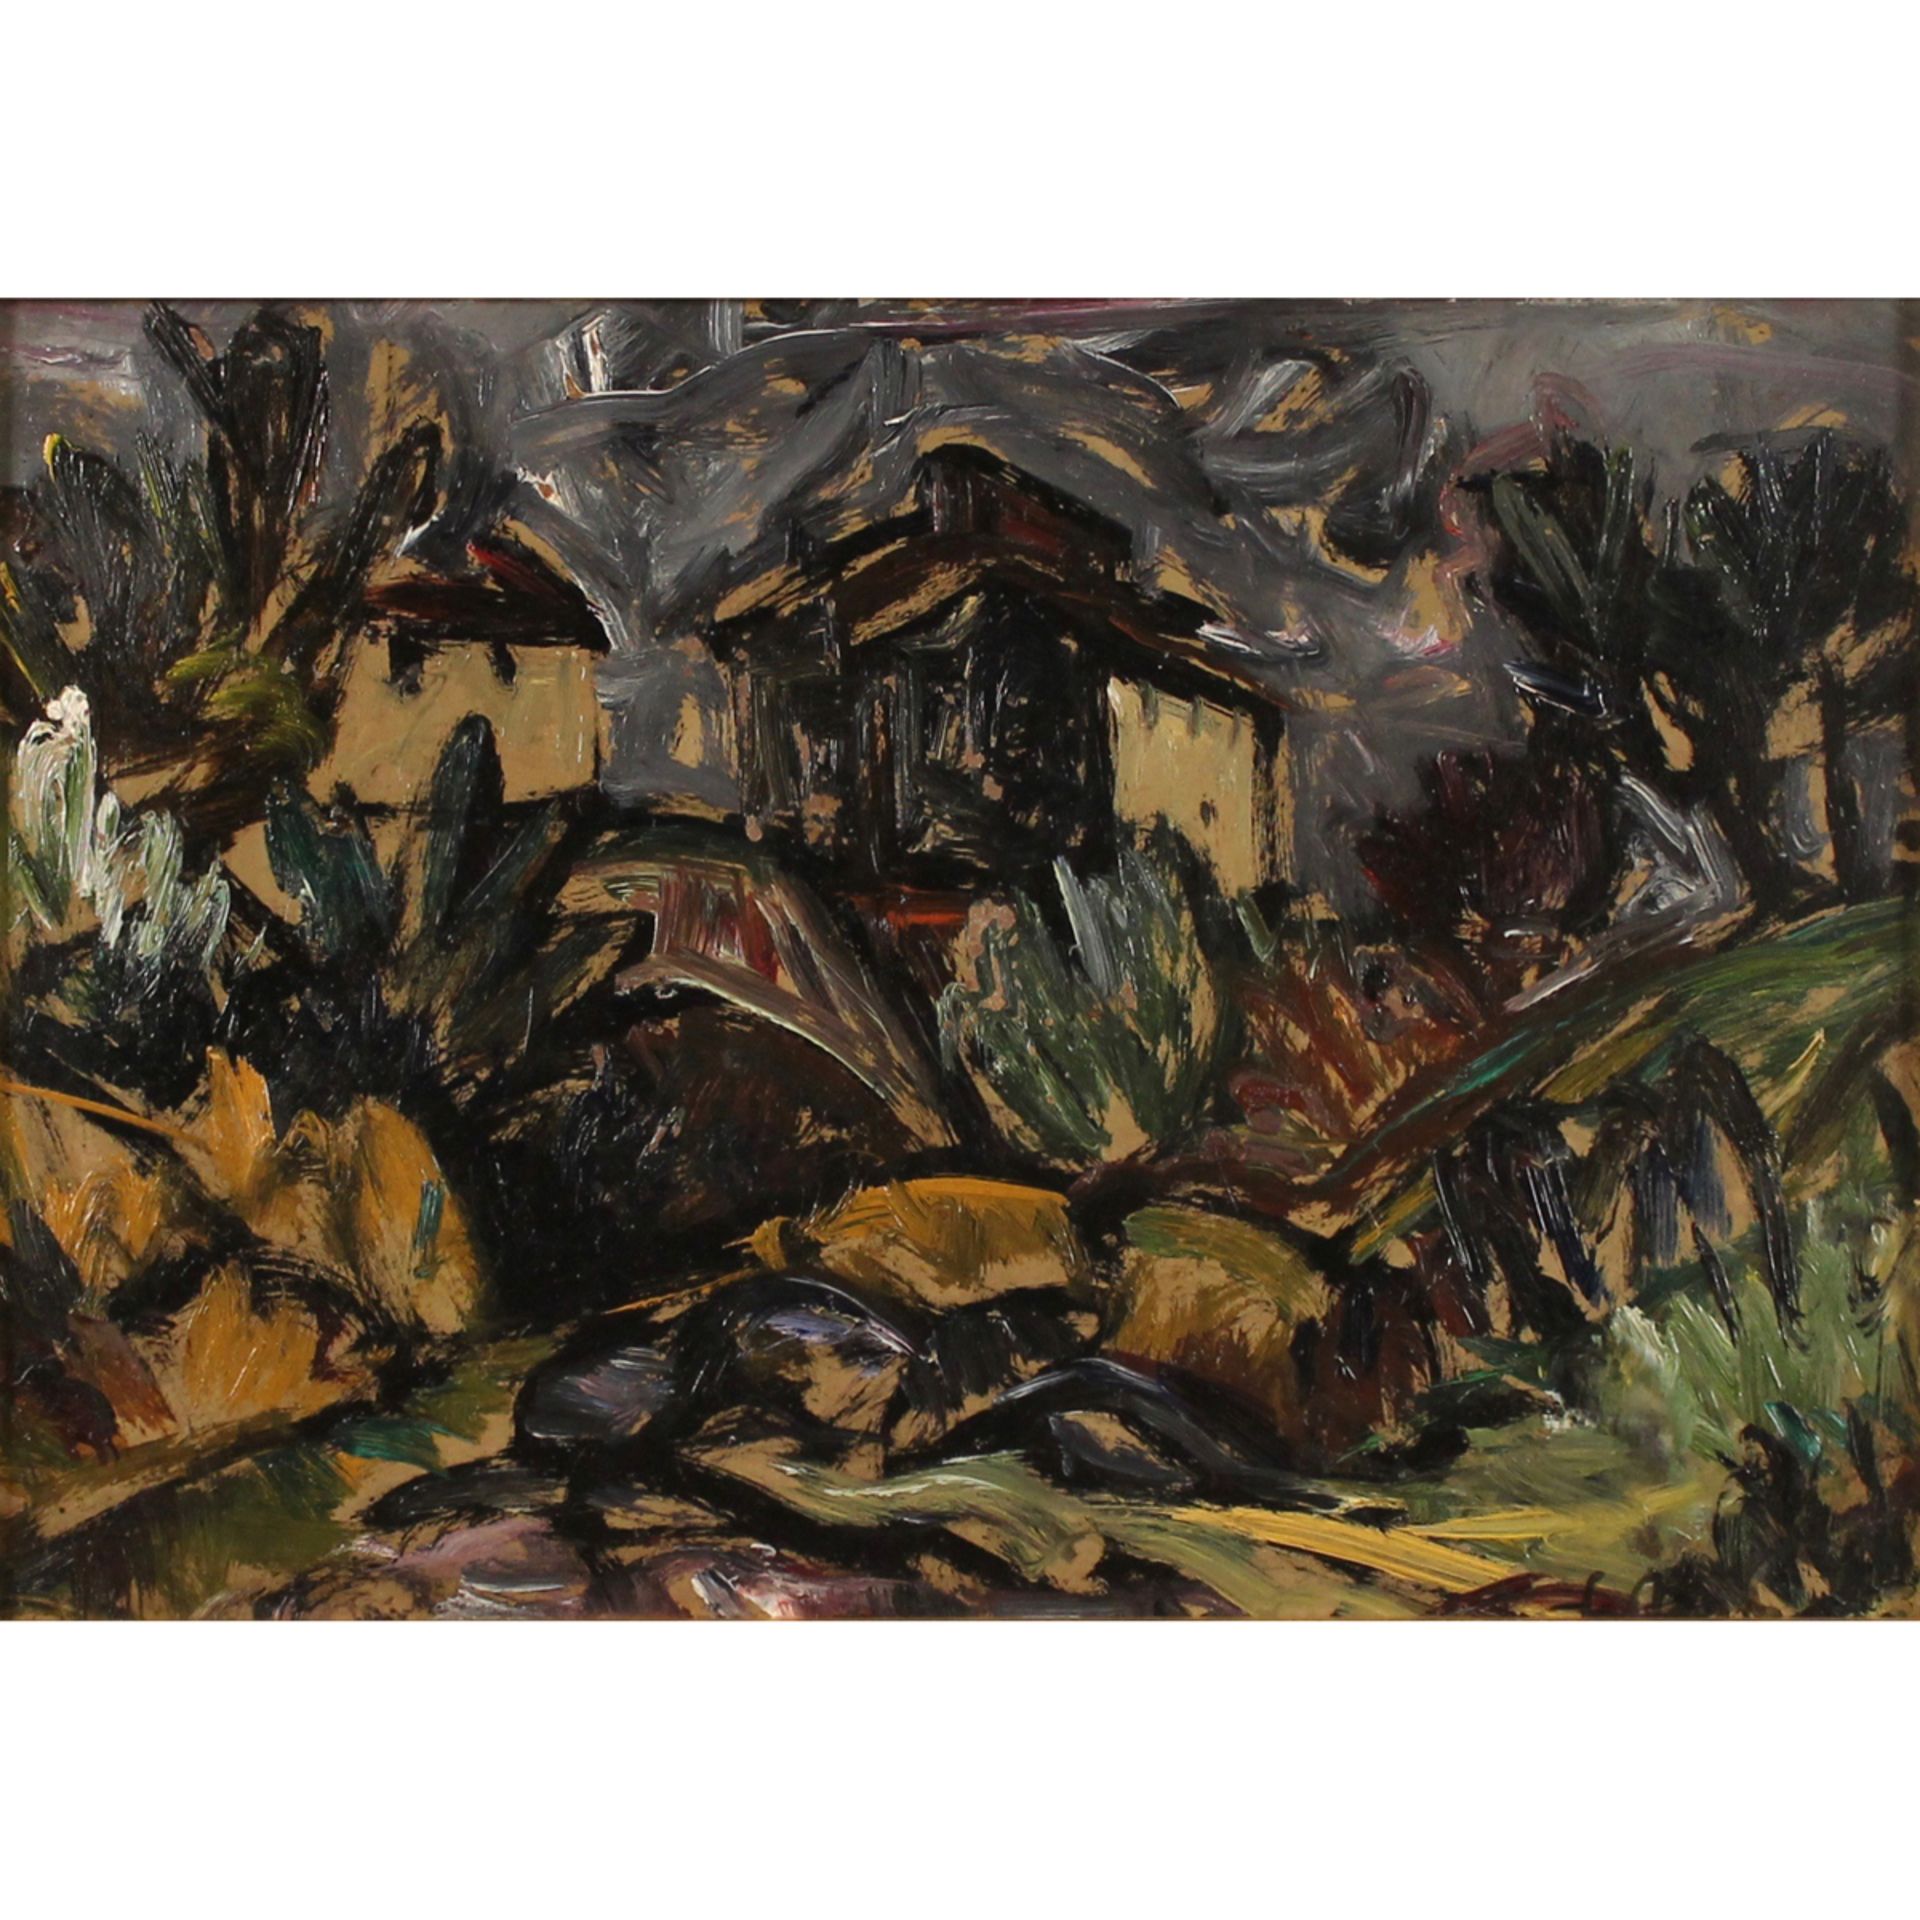 GUIDO FERRONI (1888/1979) “Paesaggio con casolari" - "Landscape with farmhouses"